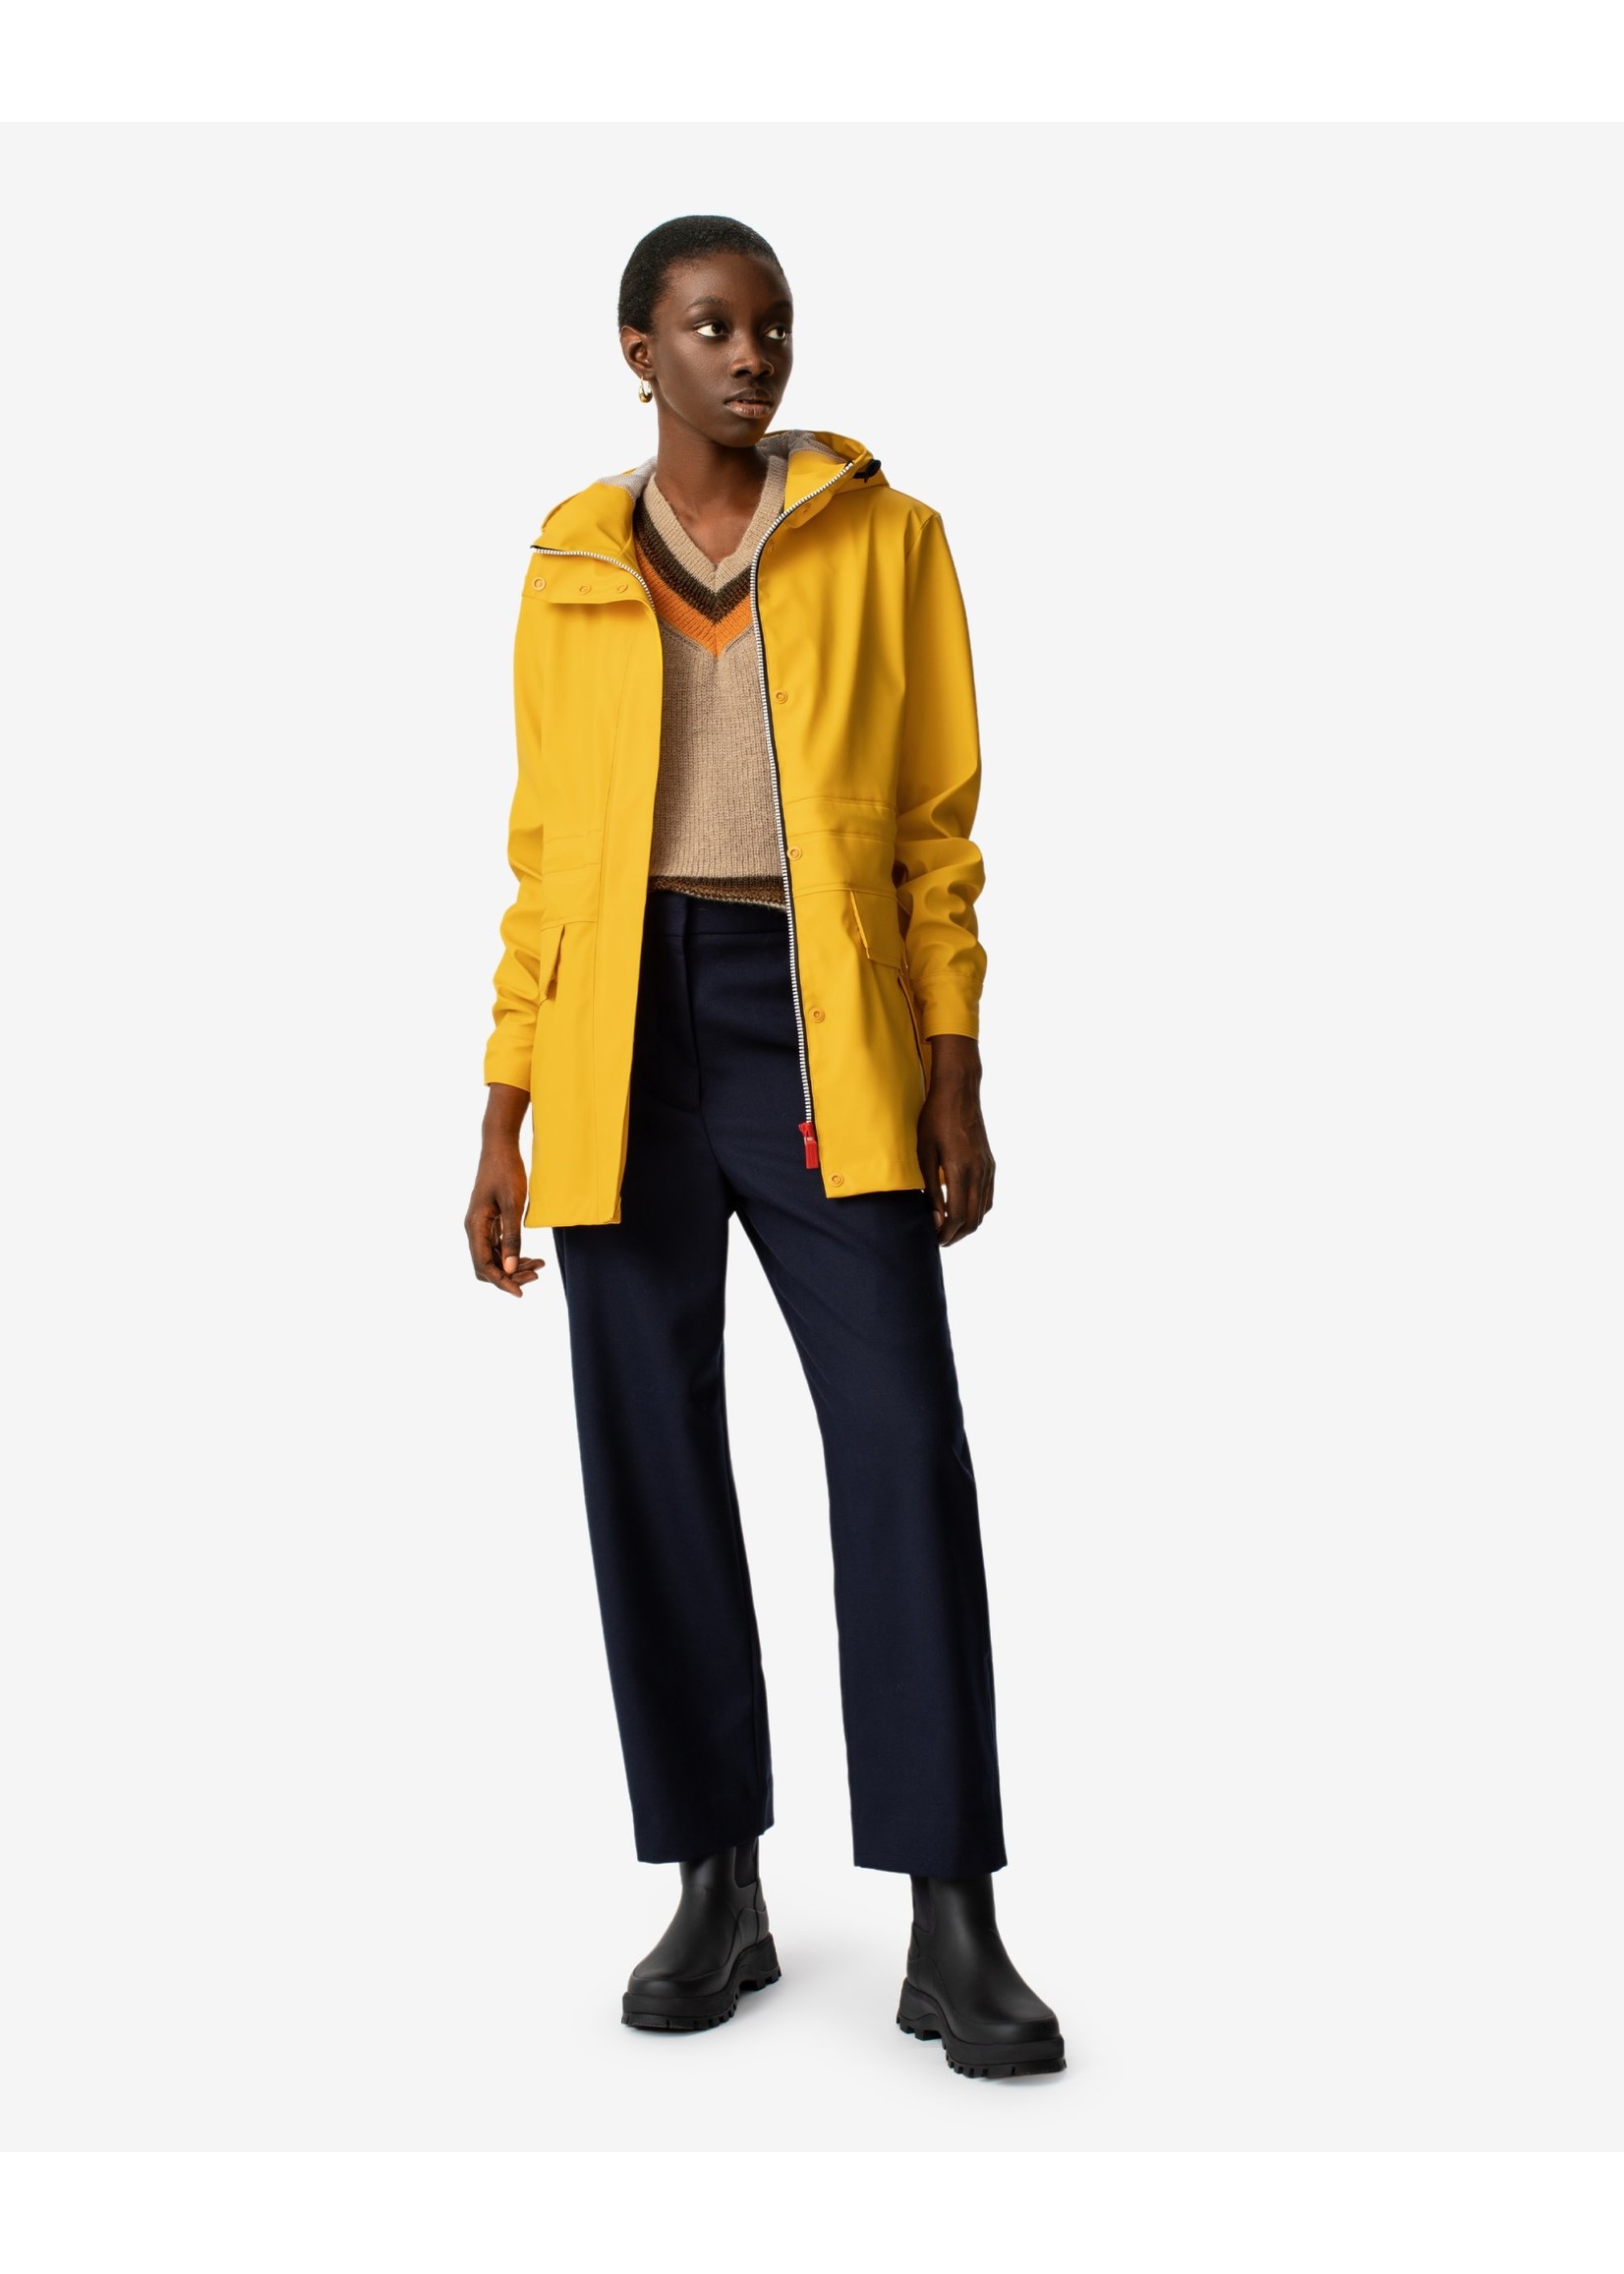 manteau de pluie jaune femme